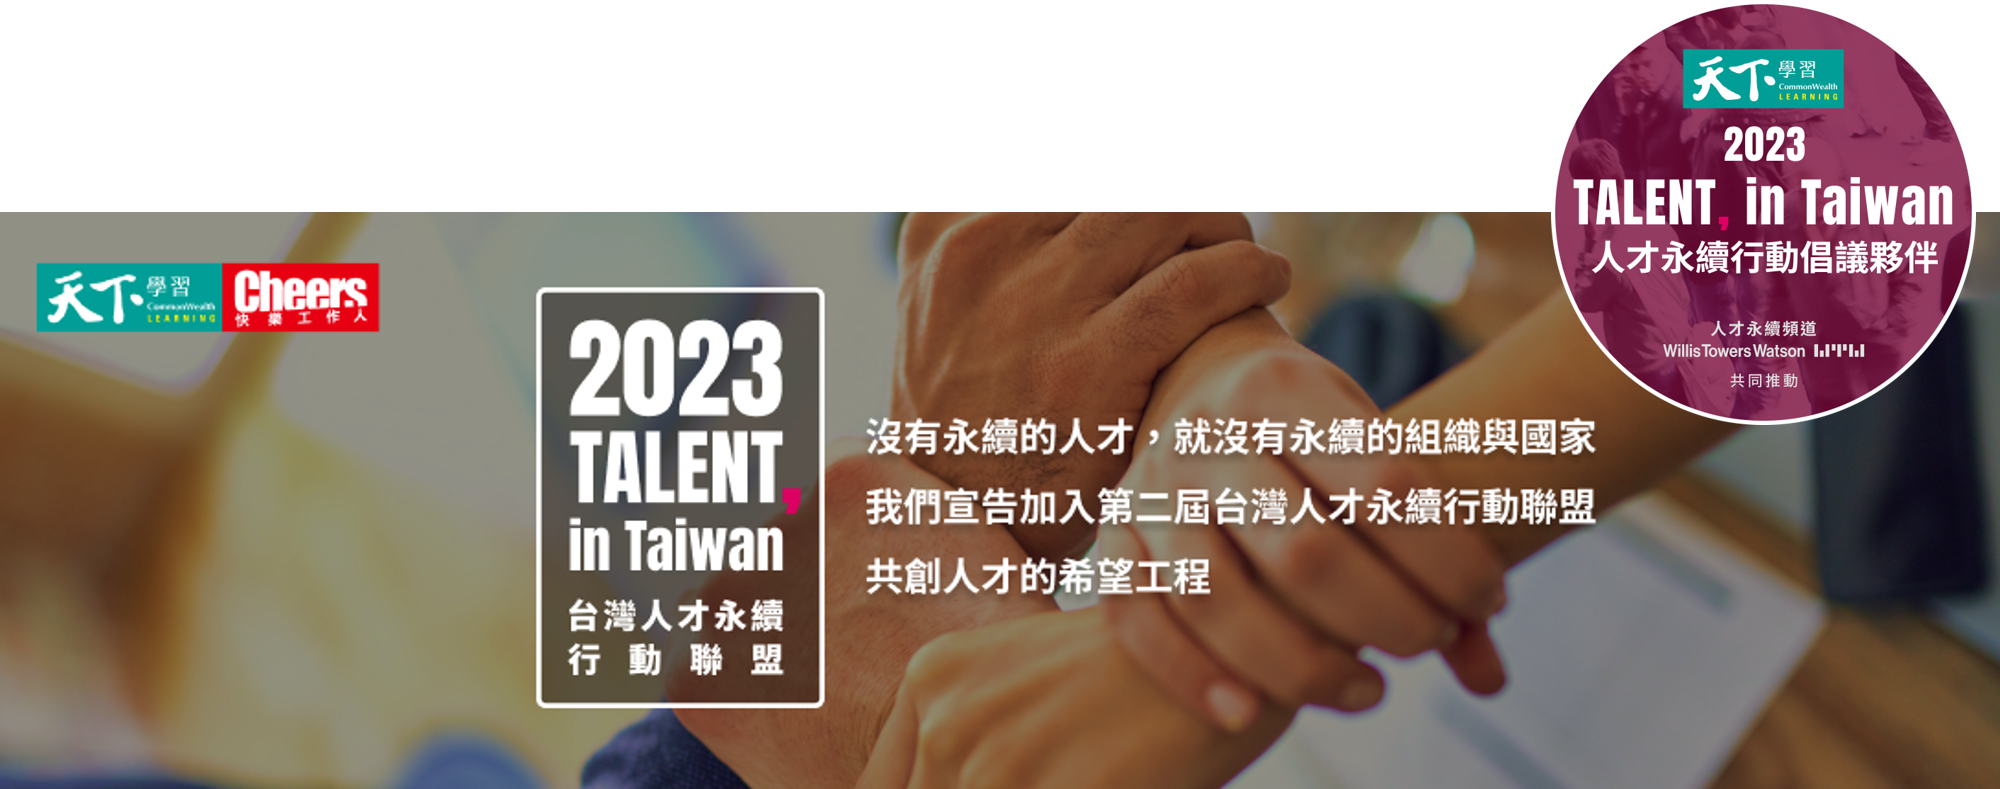 2023台灣人才永續行動(網站)